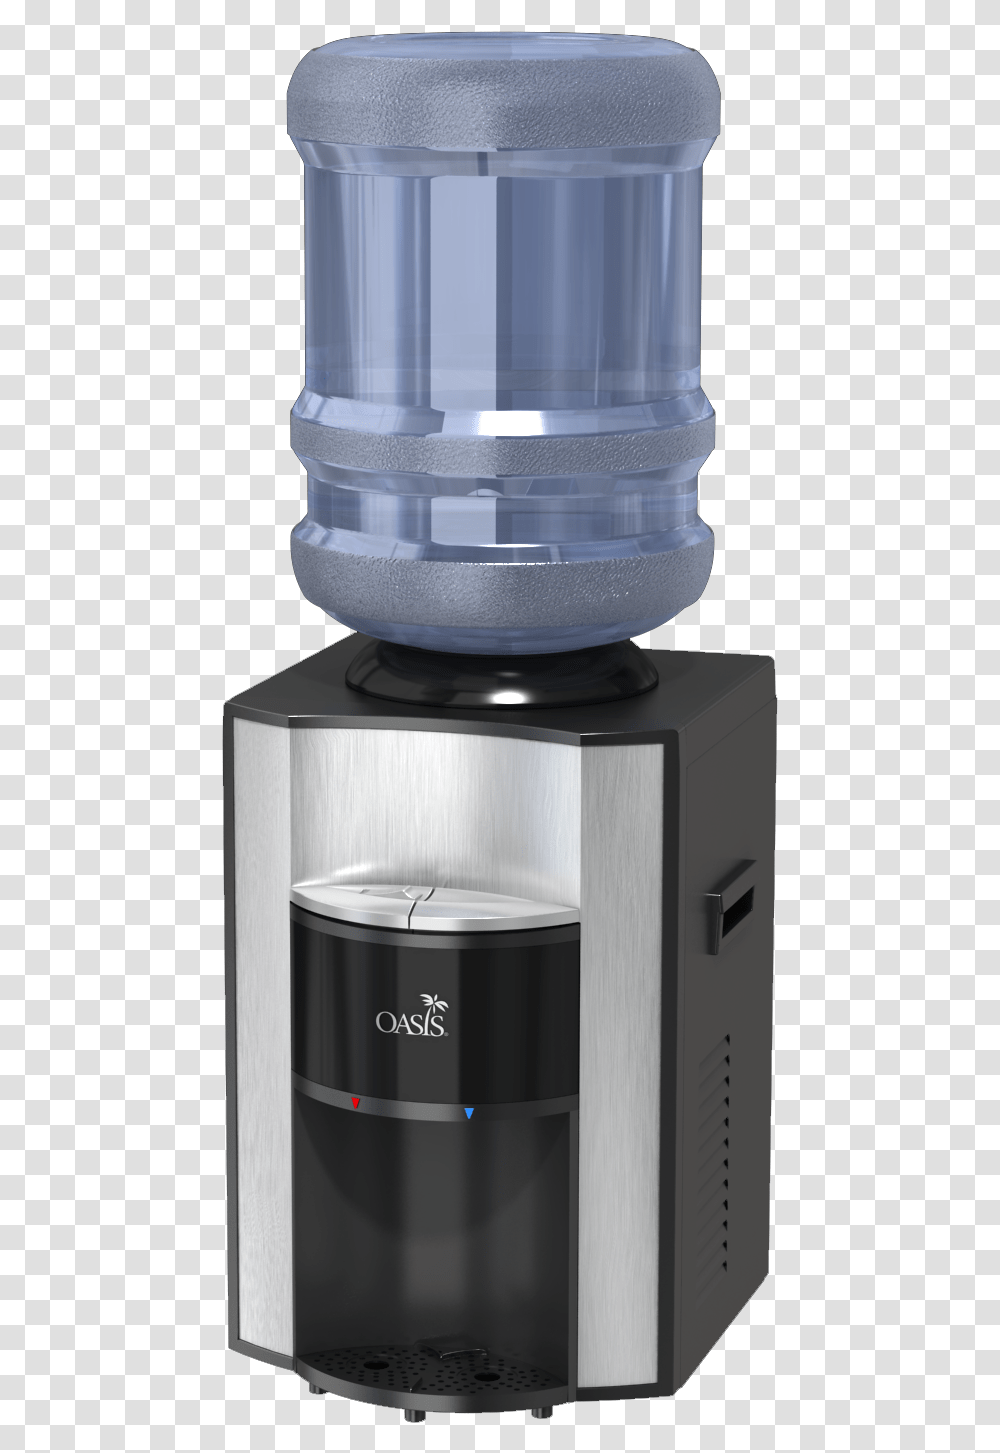 Onxy Countertop Cooler Water Dispenser, Mixer, Appliance, Barrel, Keg Transparent Png